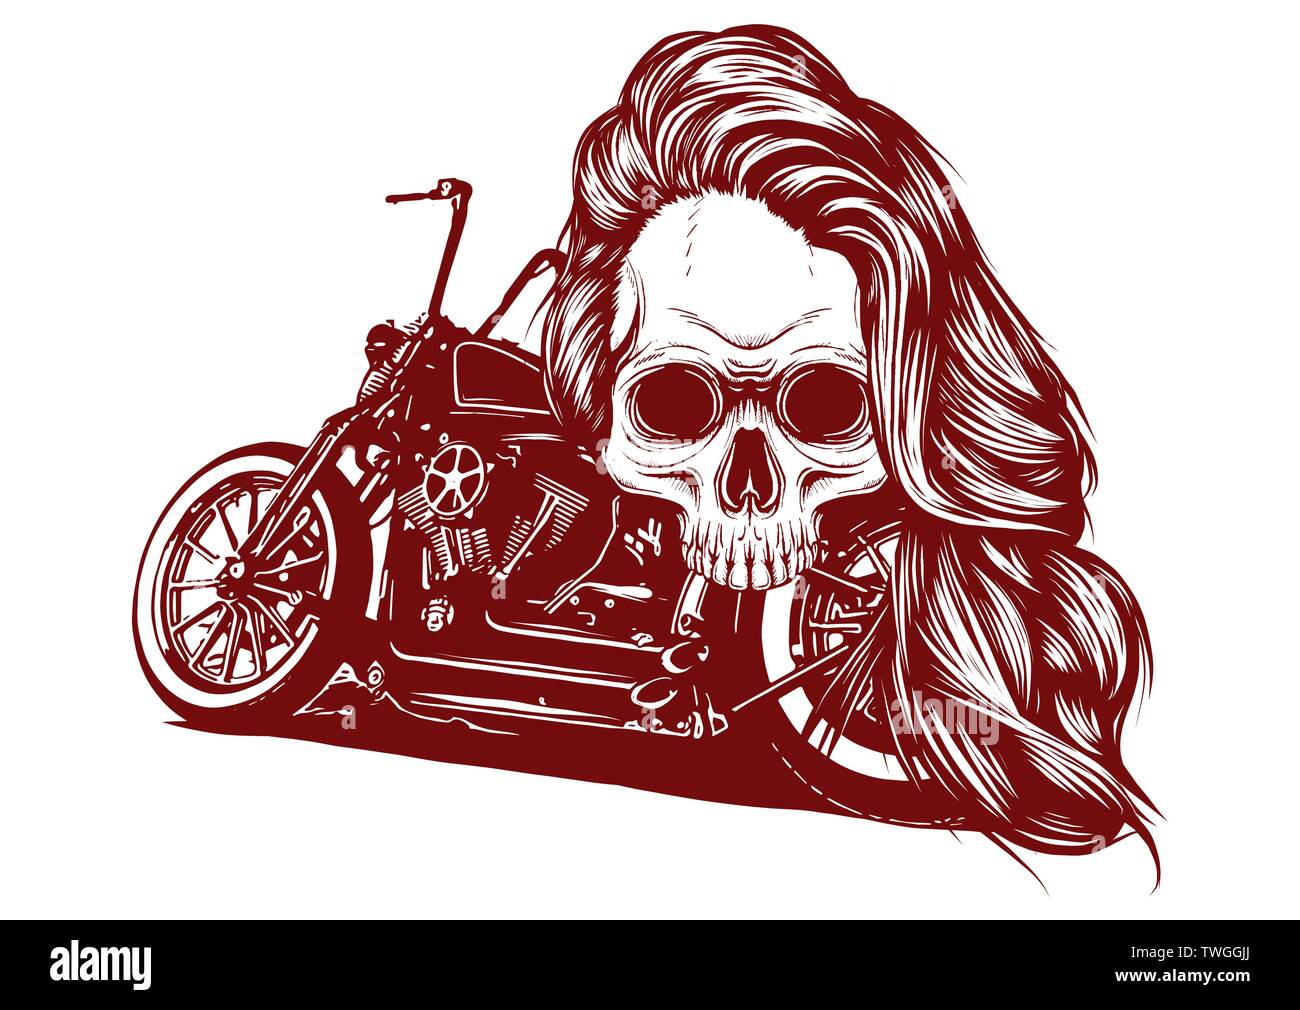 Foulard bandana tête de mort motard biker pour faire de la moto